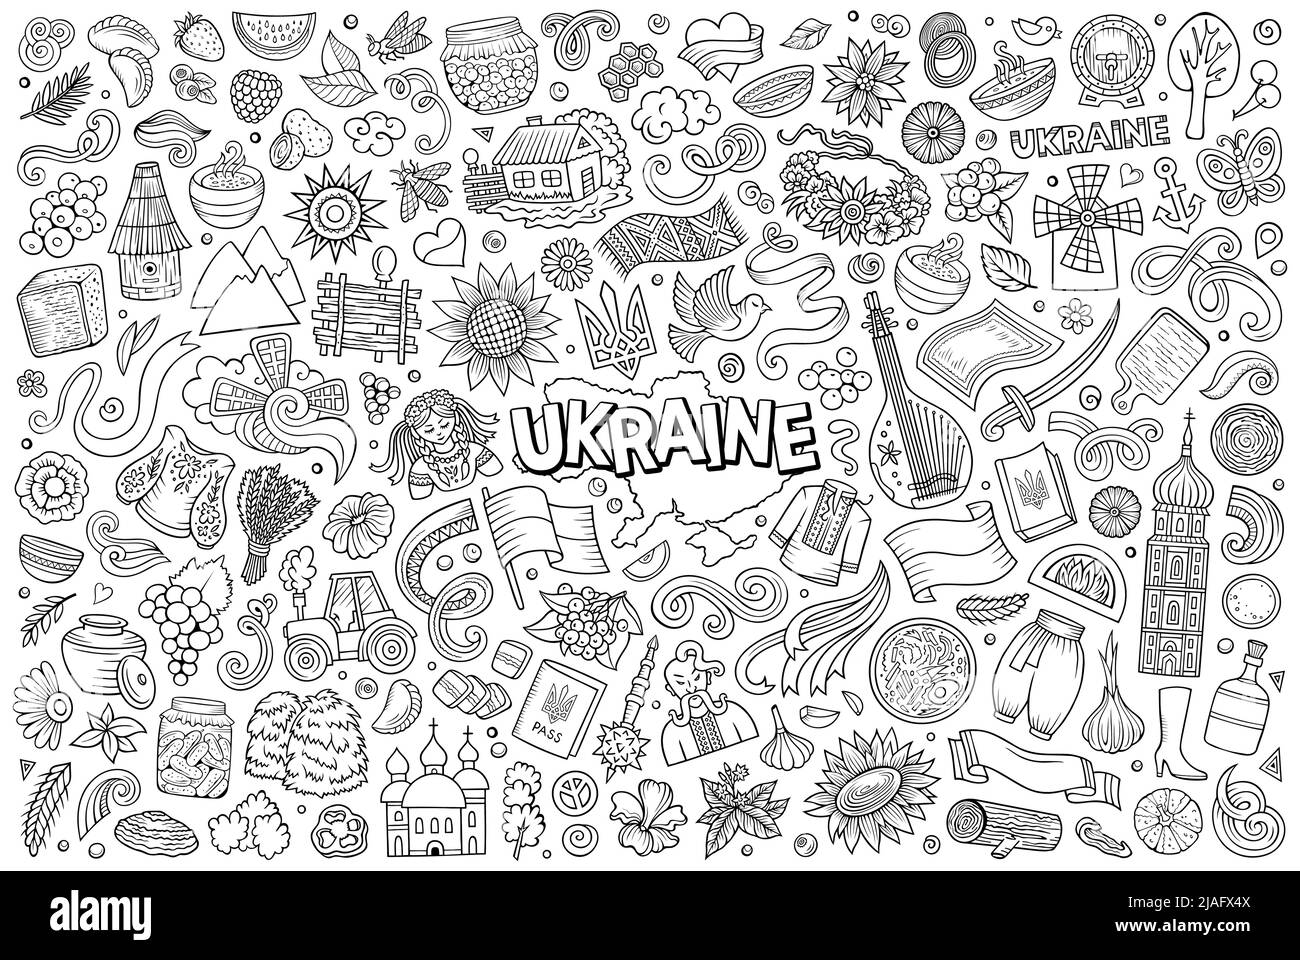 Linie Kunst Vektor Hand gezeichnete Doodle Cartoon-Set der Ukraine Themengegenstände, Objekte und Symbole Stock Vektor